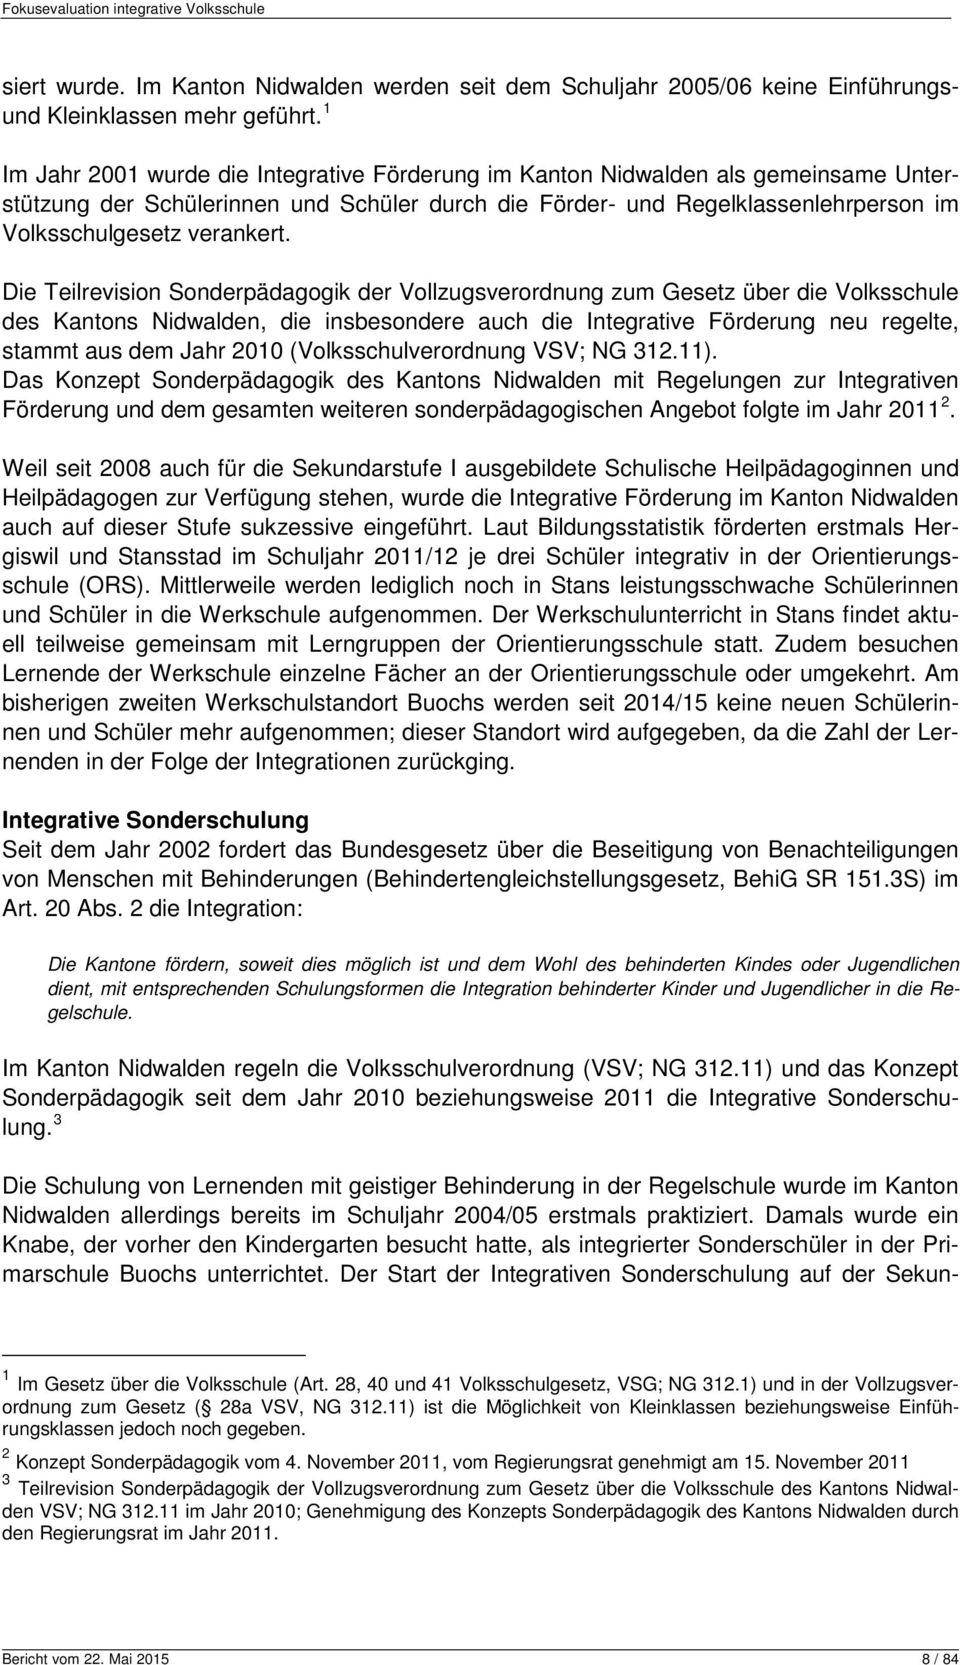 Die Teilrevision Sonderpädagogik der Vollzugsverordnung zum Gesetz über die Volksschule des Kantons Nidwalden, die insbesondere auch die Integrative Förderung neu regelte, stammt aus dem Jahr 2010